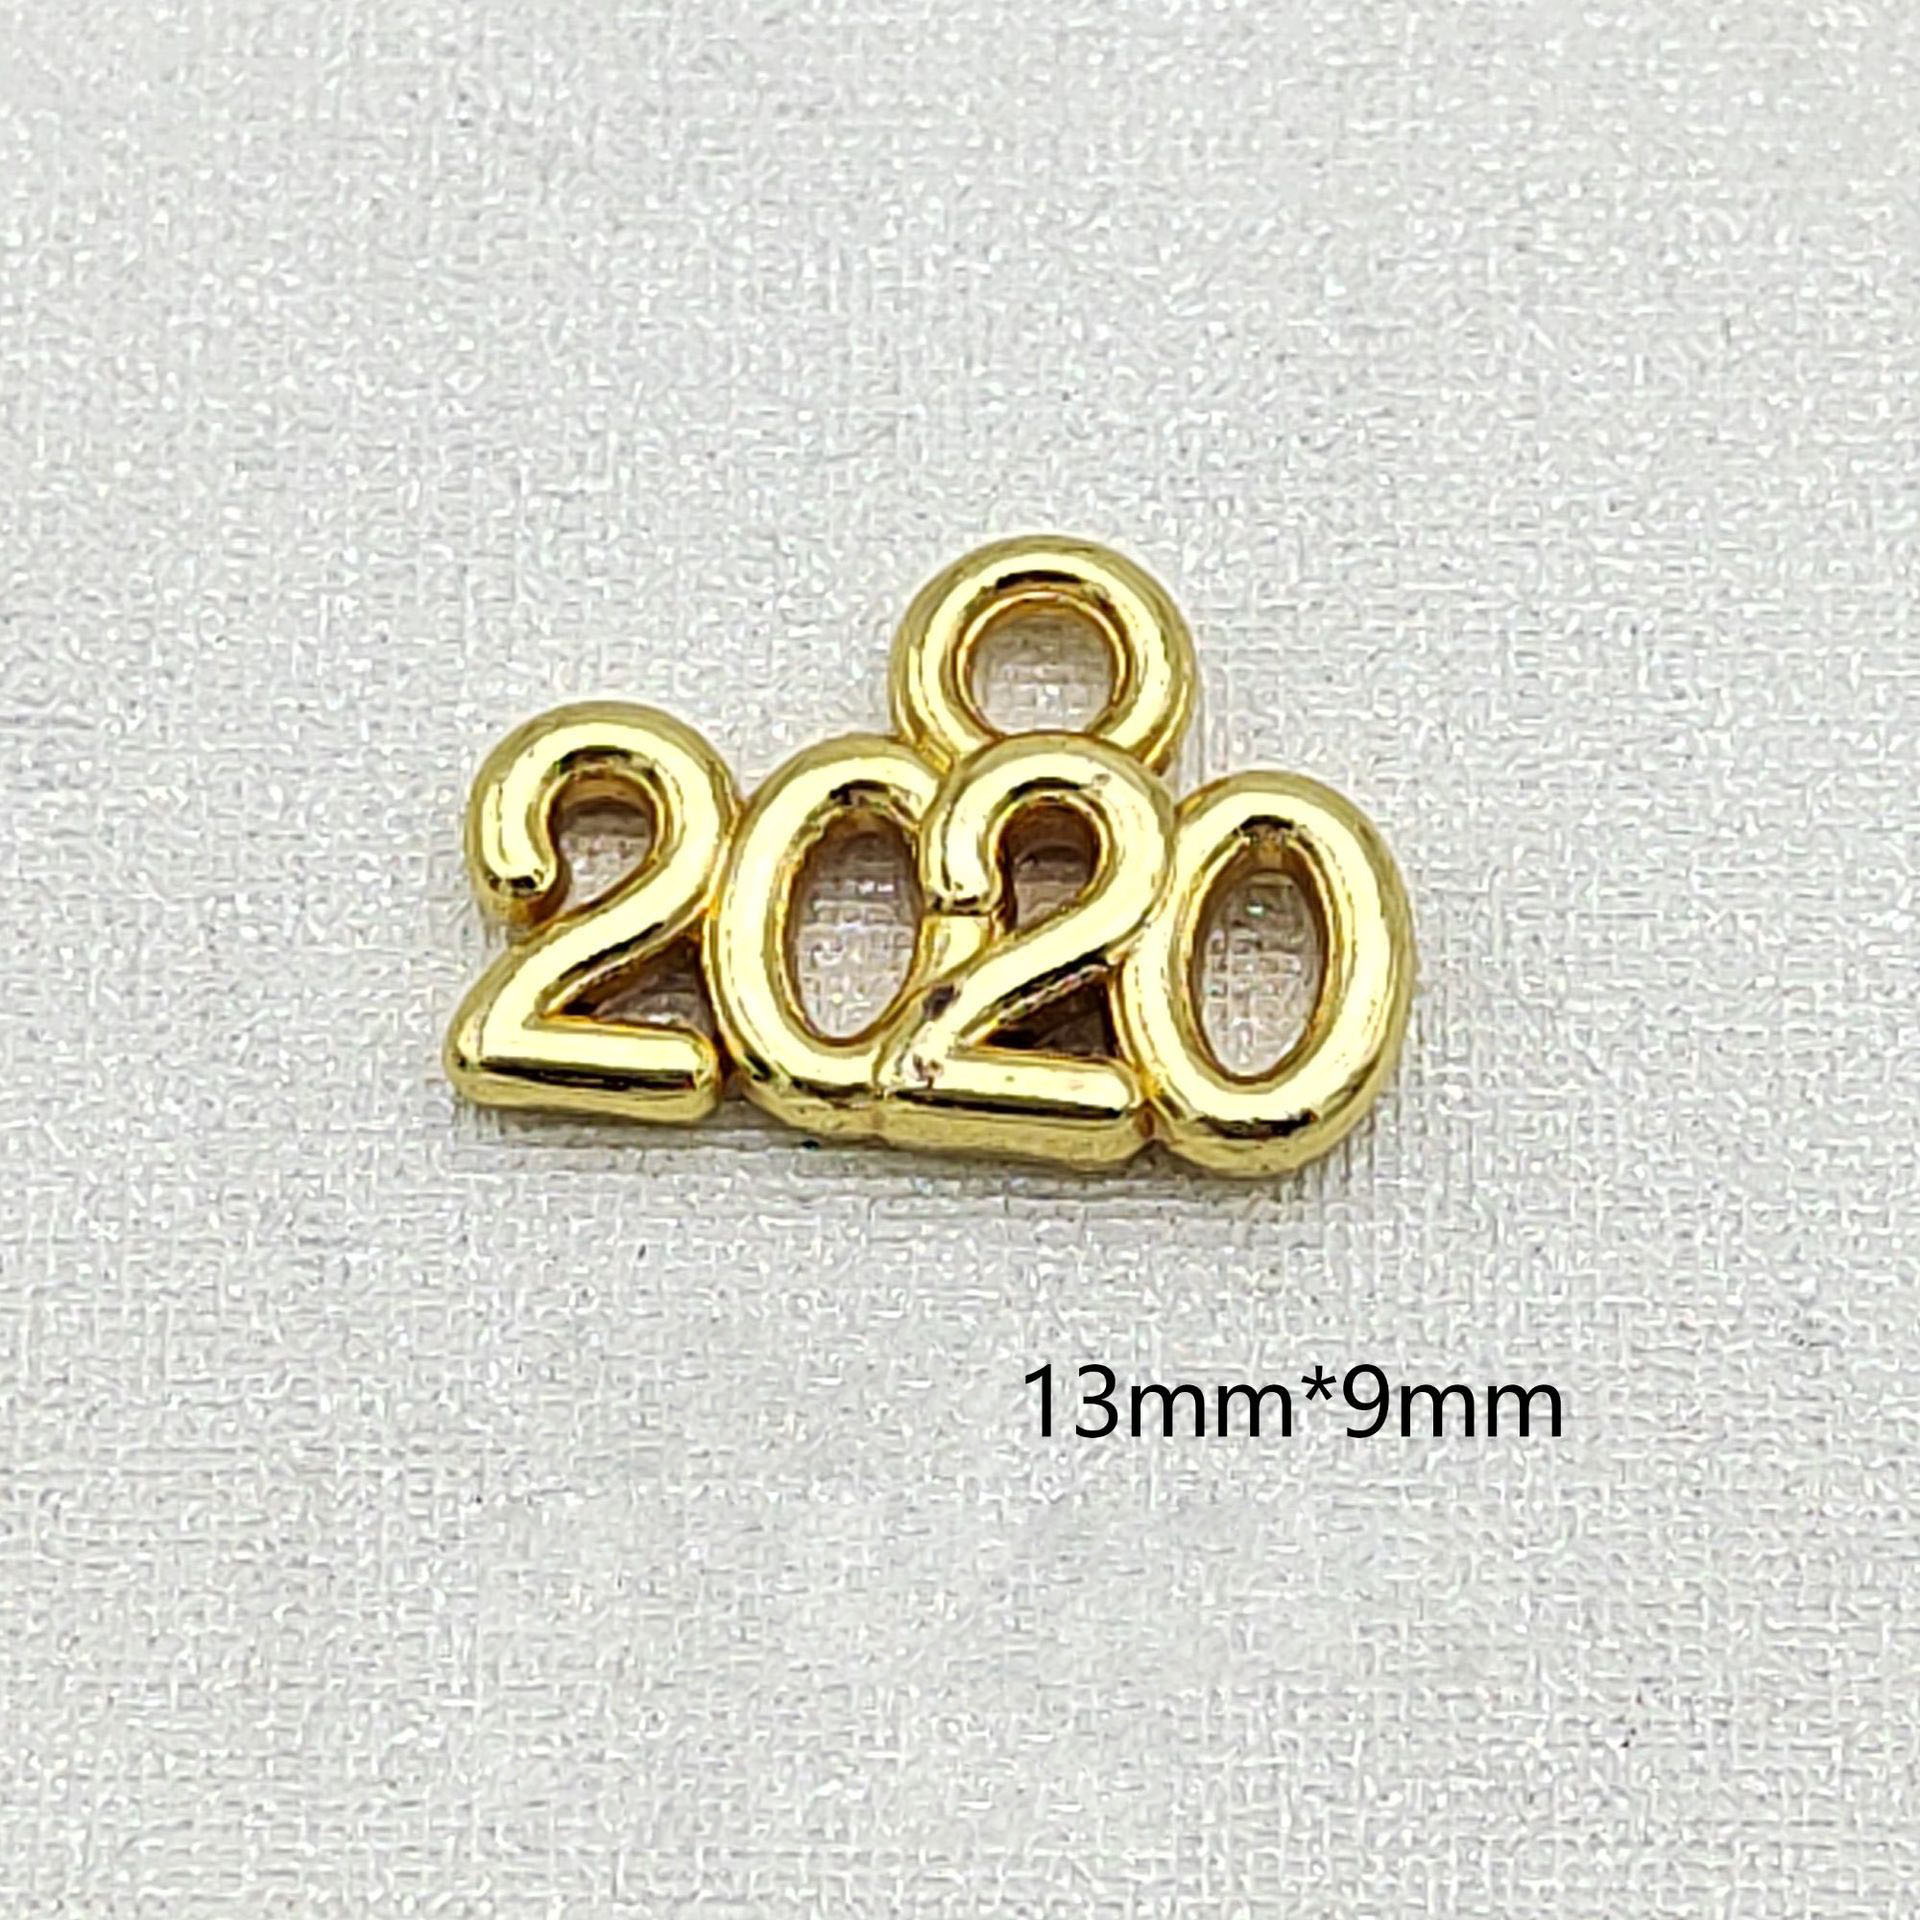 3:Golden 2020